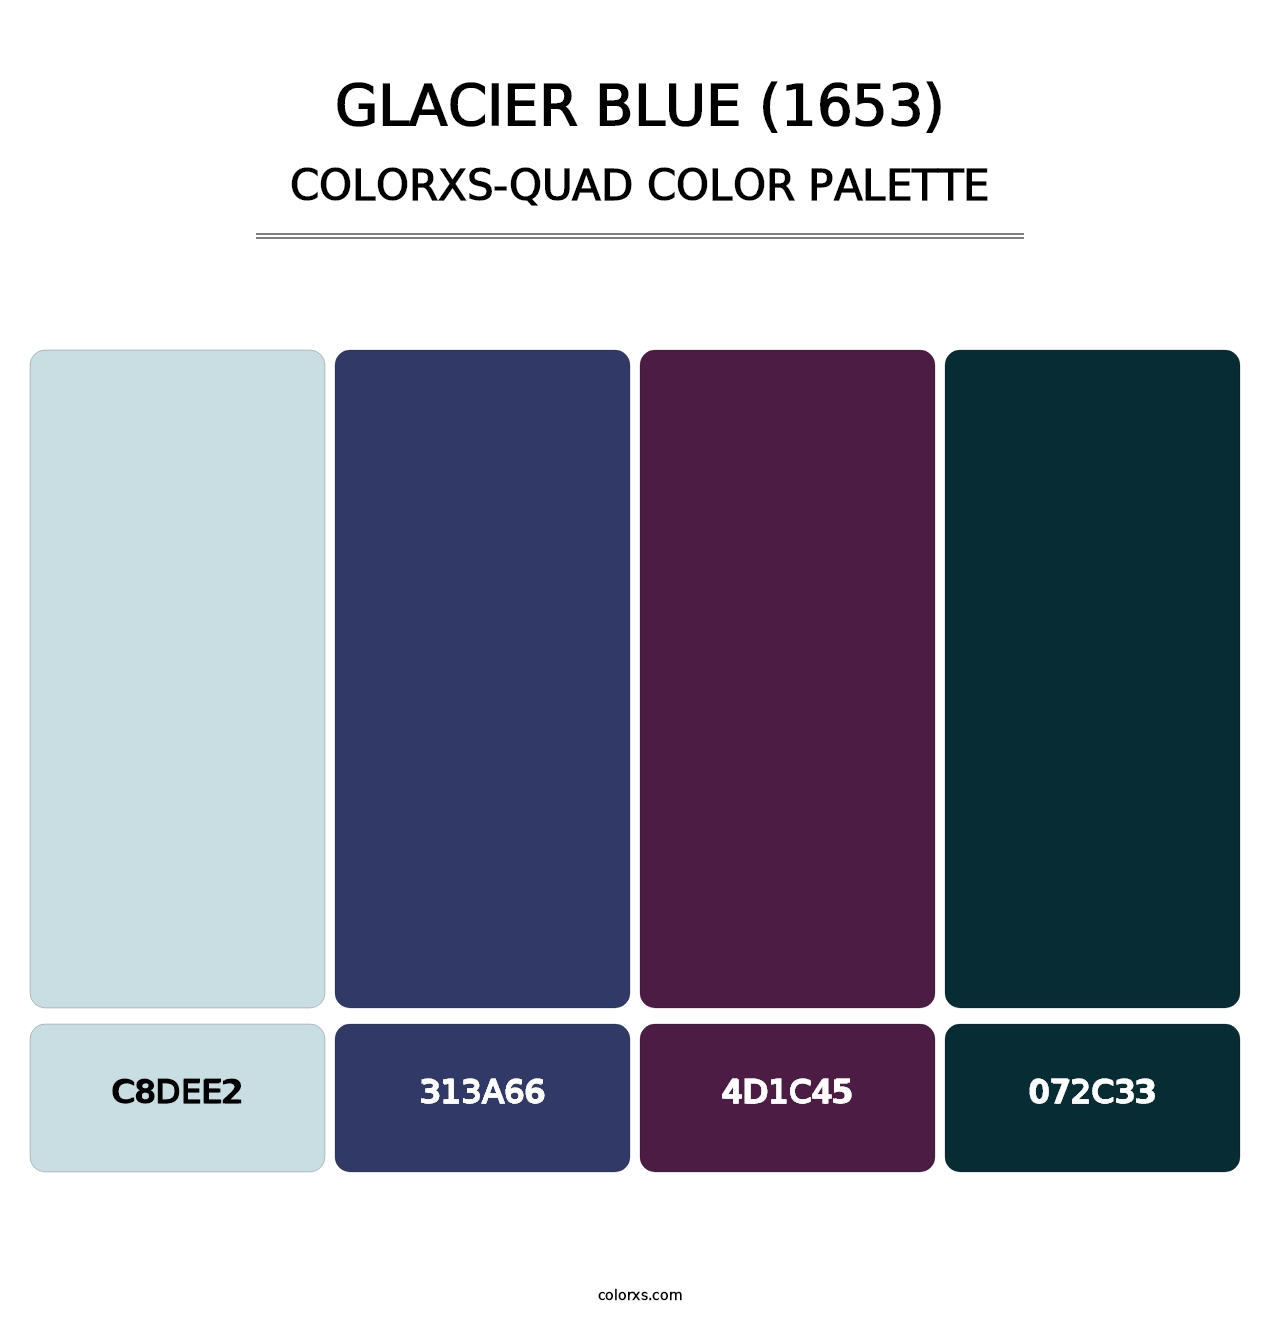 Glacier Blue (1653) - Colorxs Quad Palette